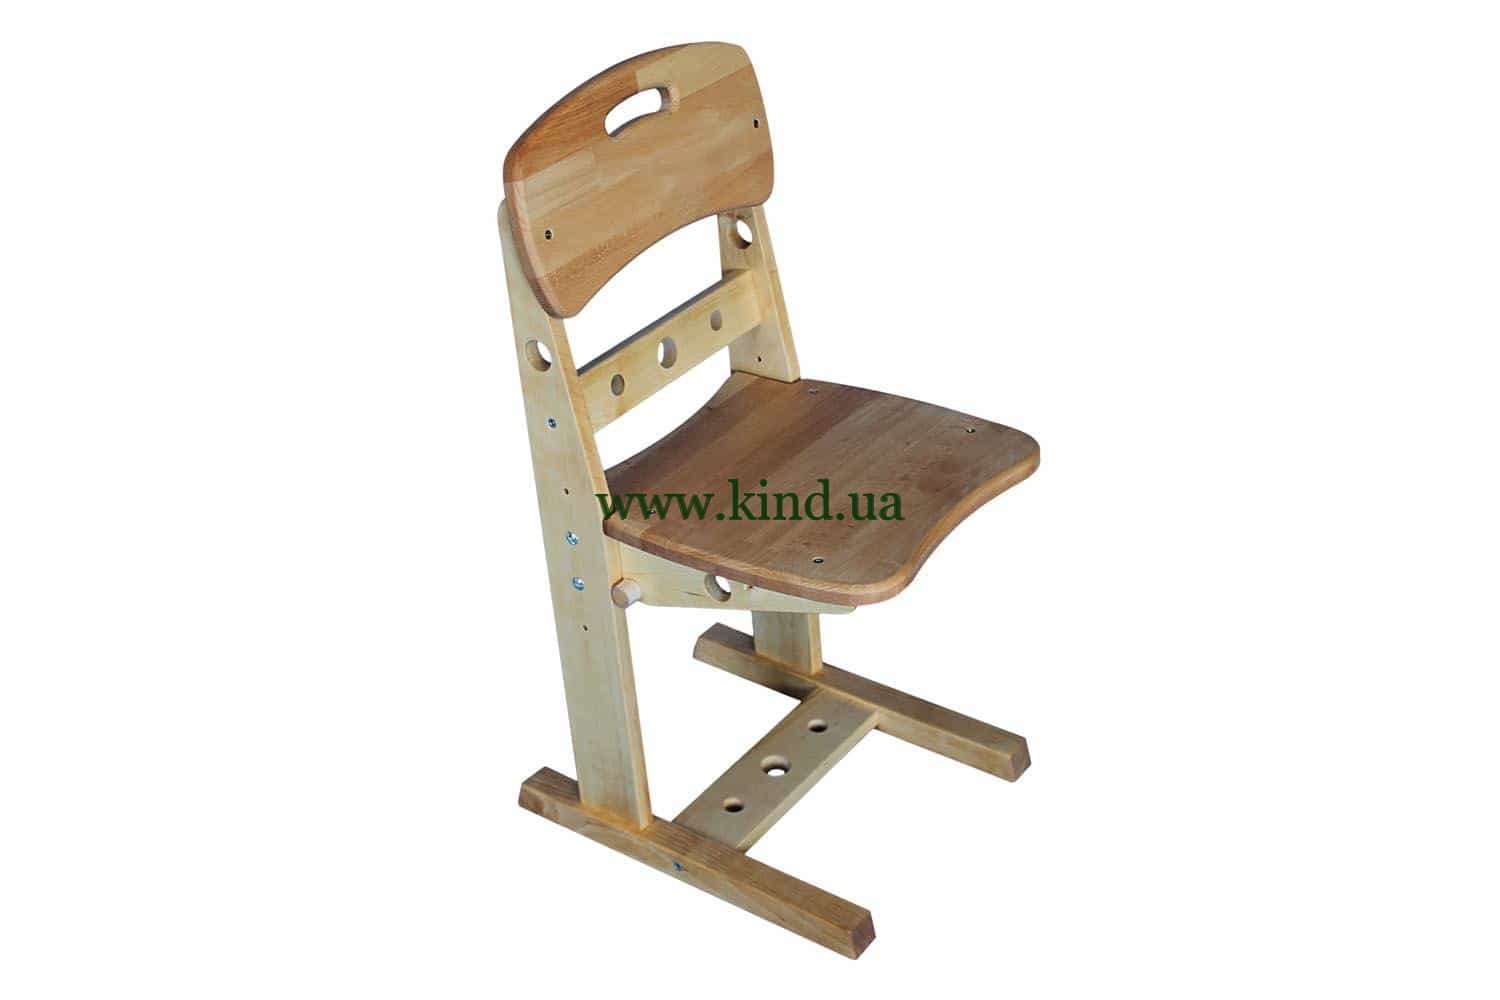 Хофф стул для школьника регулируемый по высоте